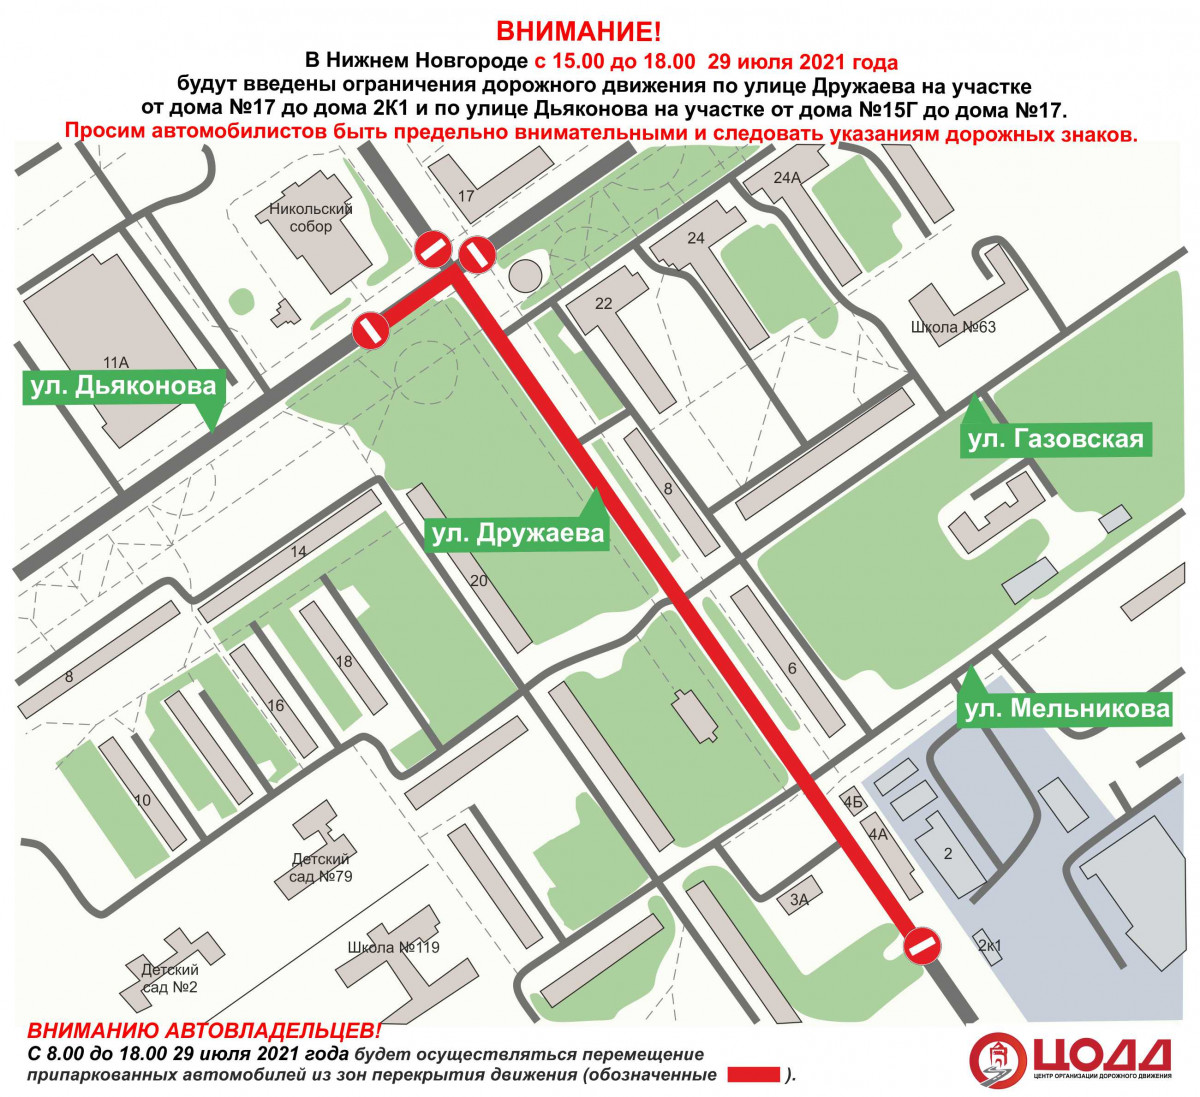 Движение транспорта по улицам Дружаева и Дьяконова временно ограничат